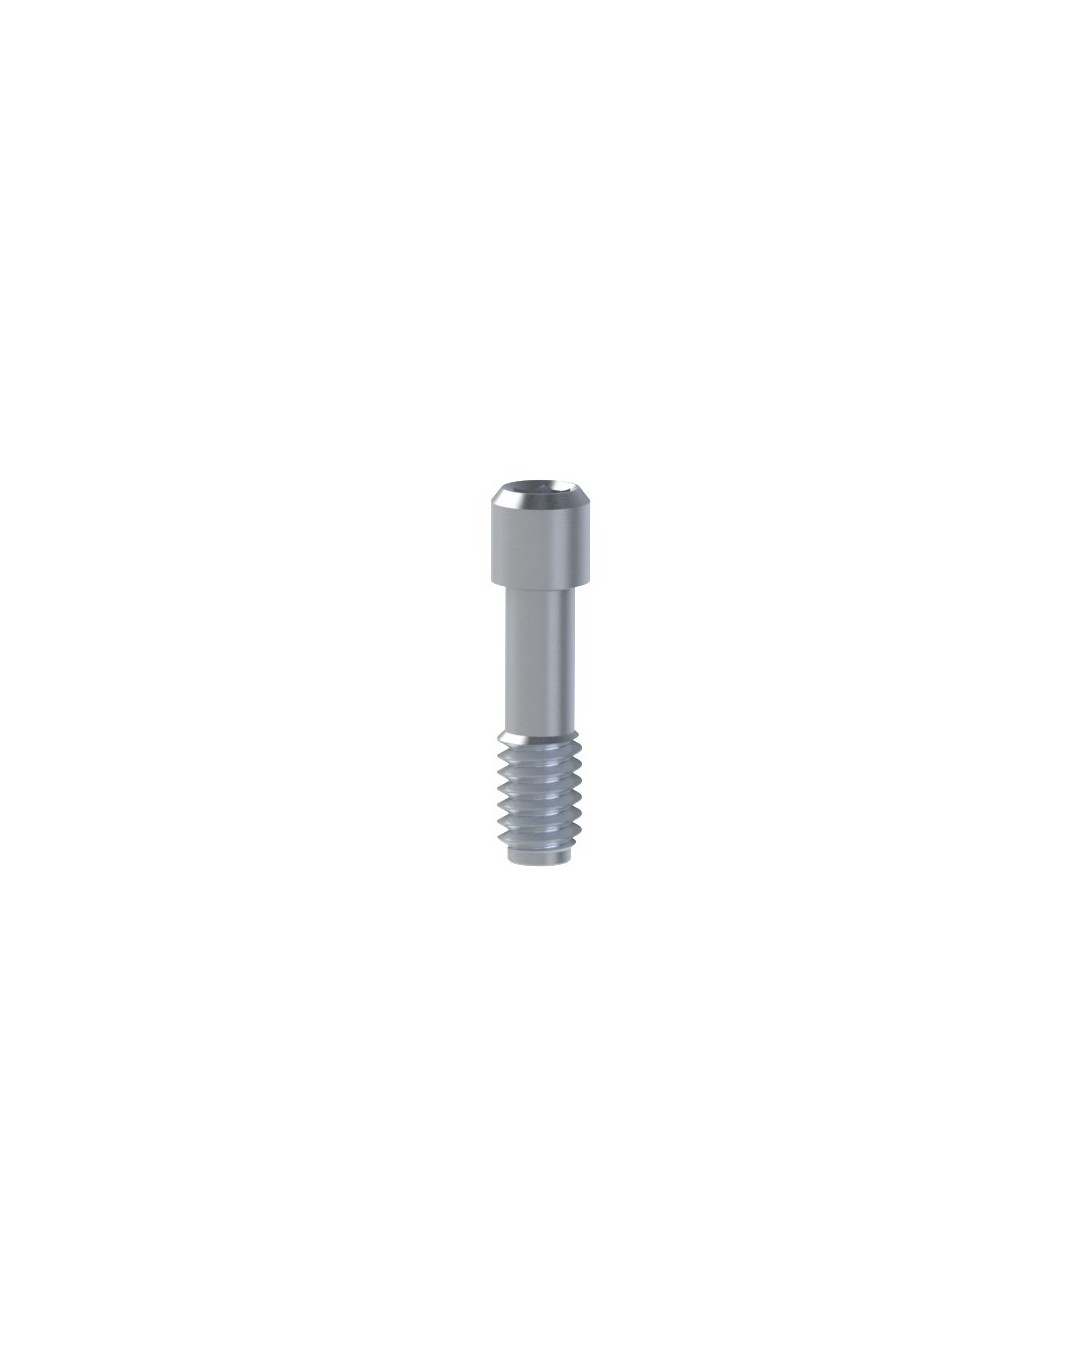 Titanium Screw compatible with Megagen® AnyRidge®